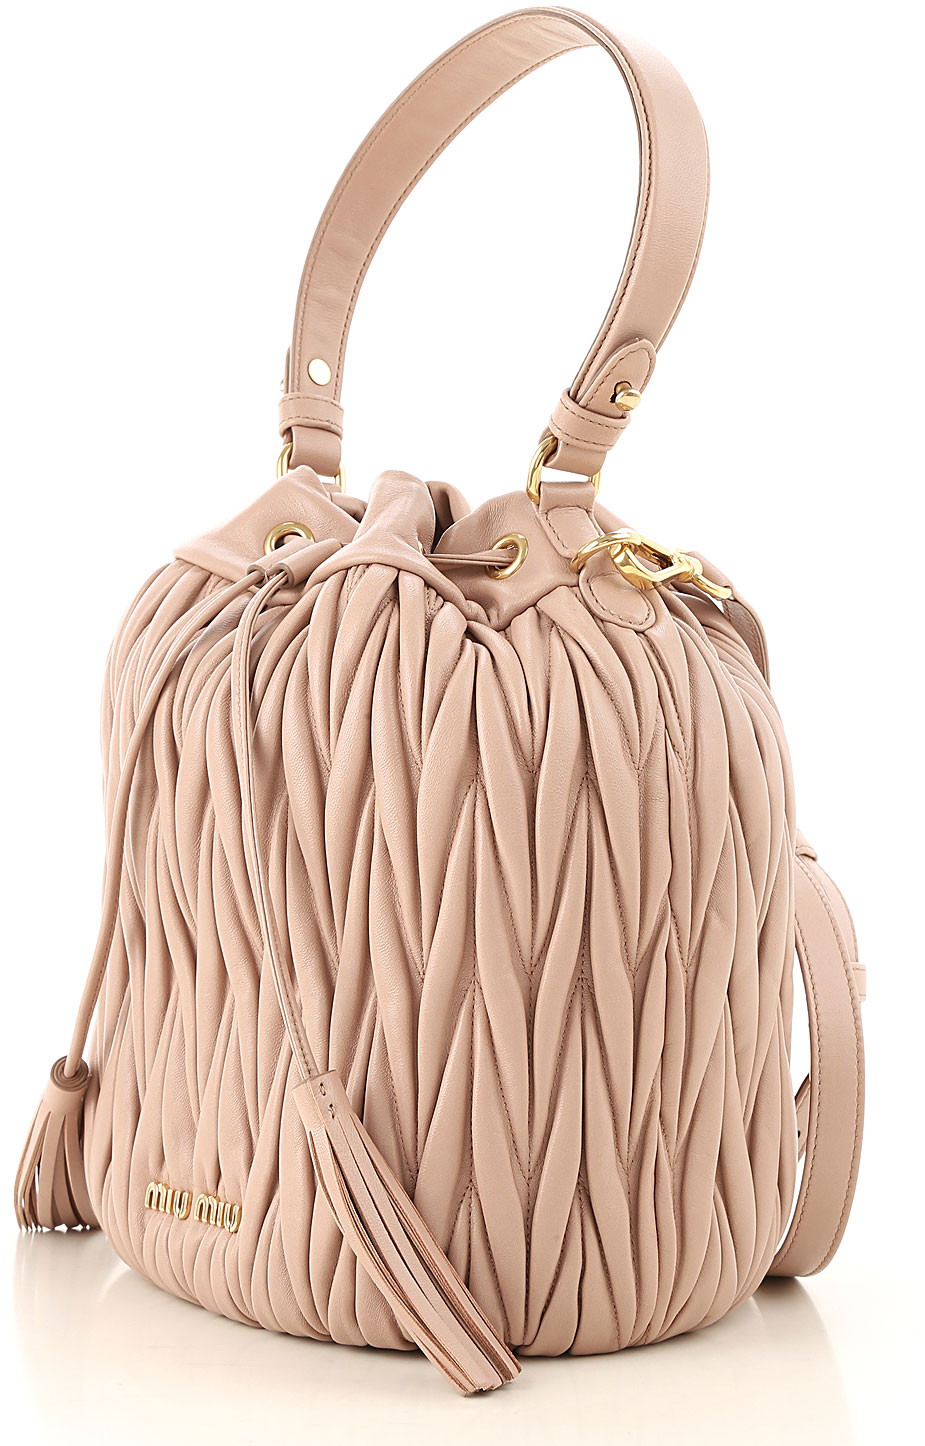 Handbags Miu Miu, Style code: 5be037-n88-f0770